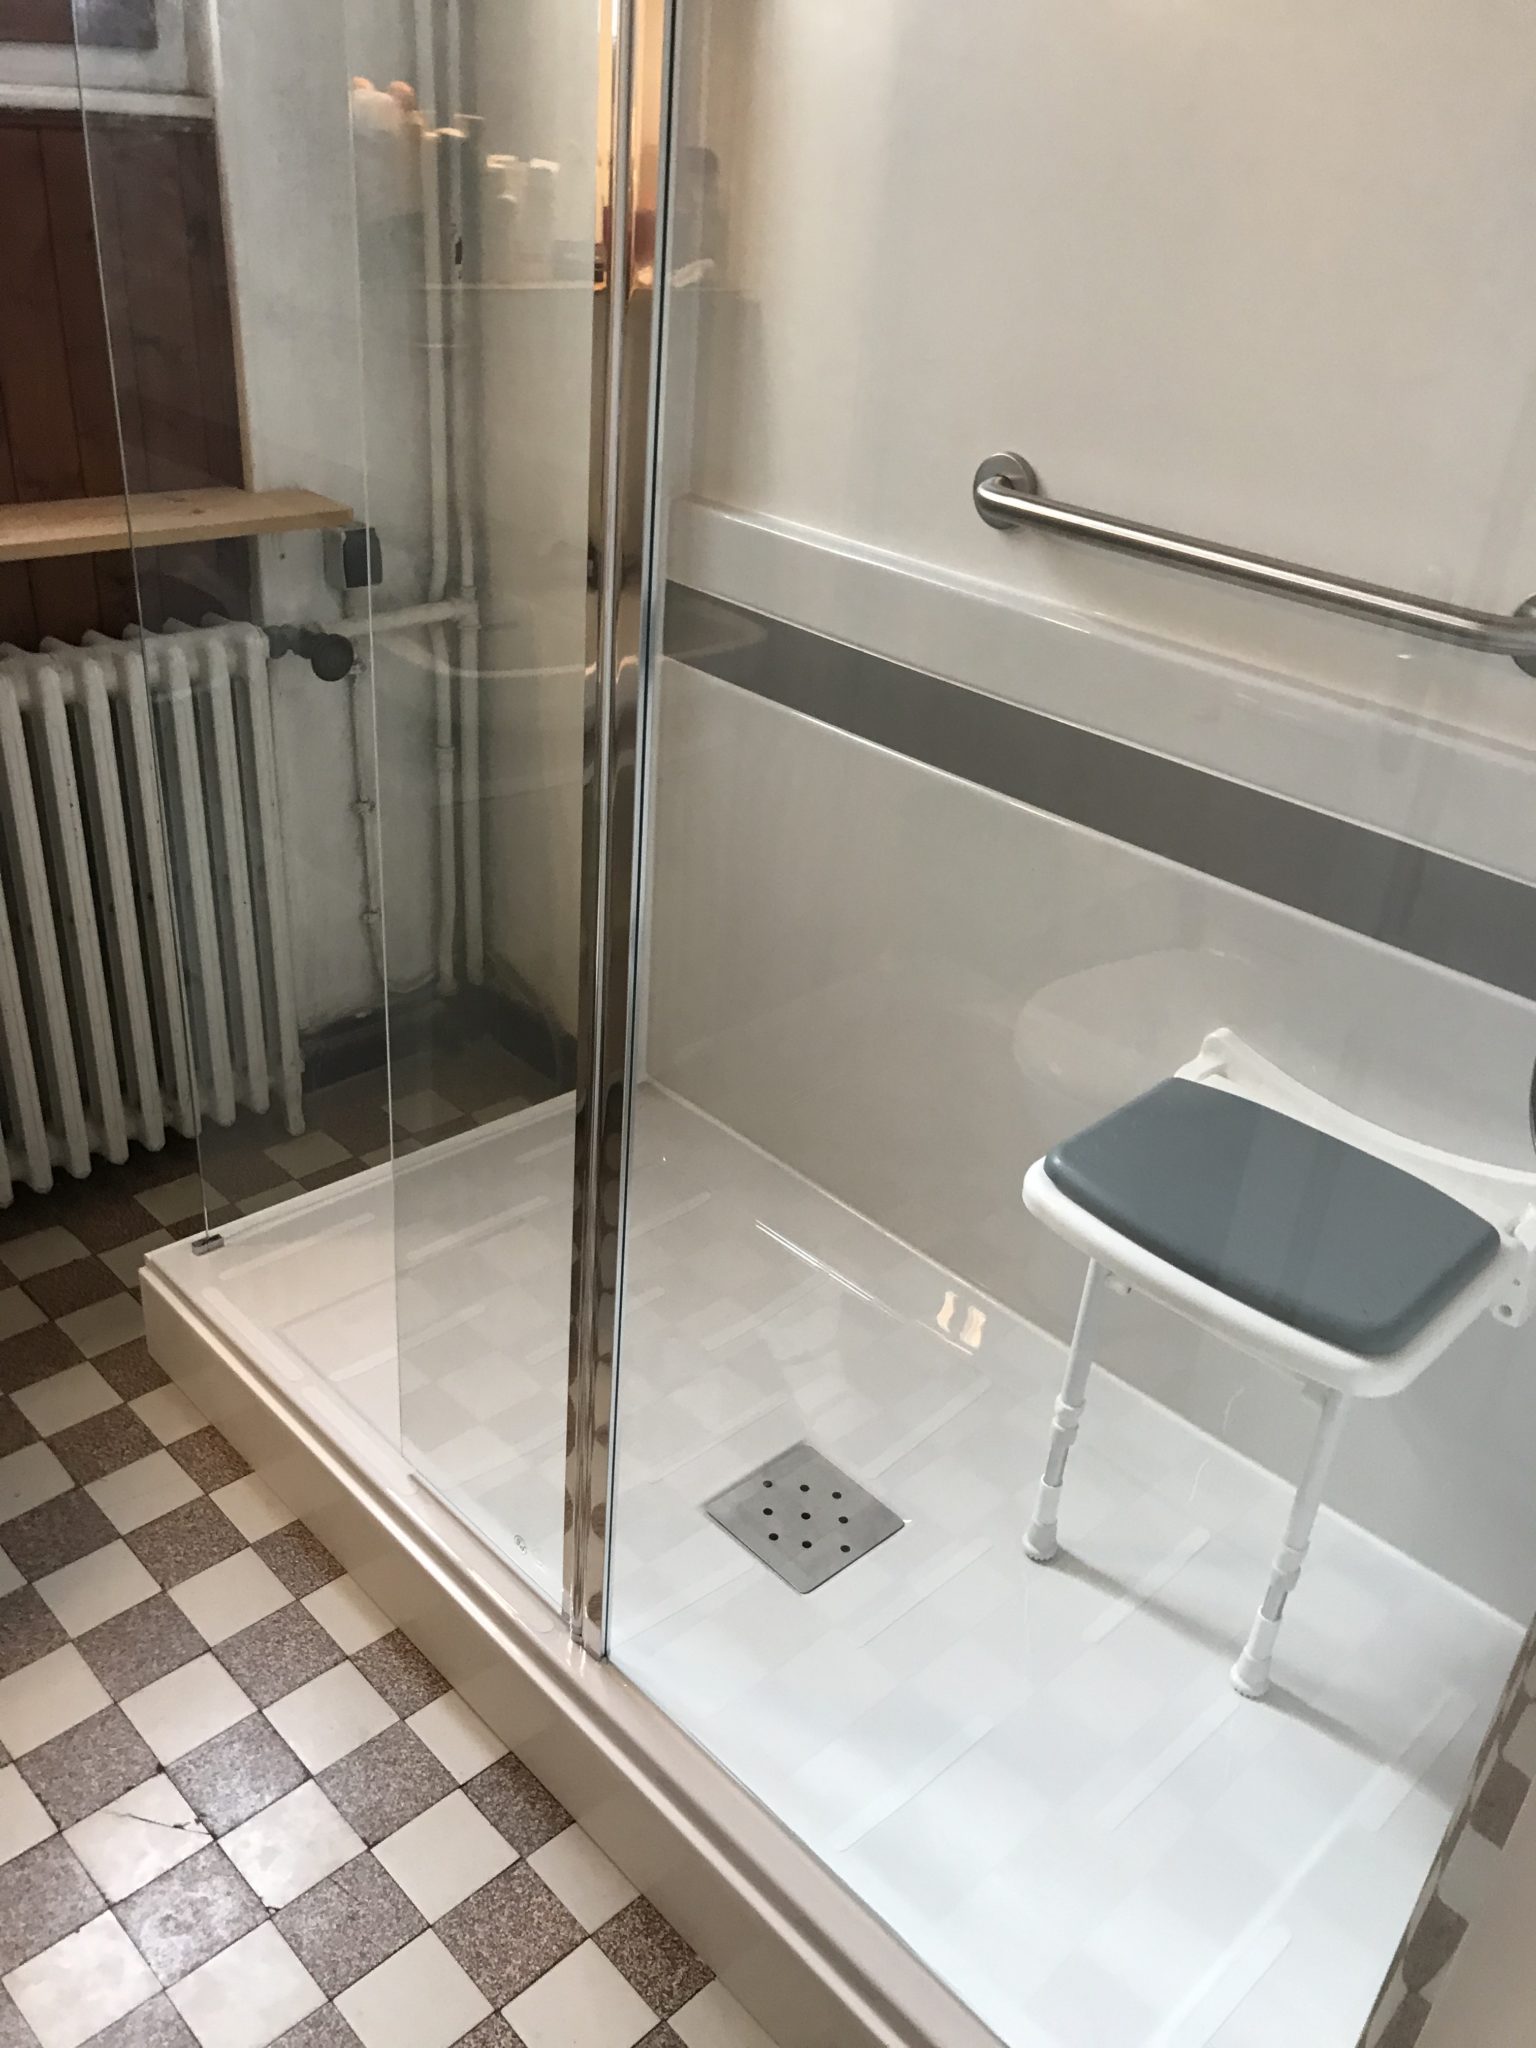 Remplacement de baignoire en bac à douche à Grésy-sur-Aix - RENOVBAIN RHONE ALPES